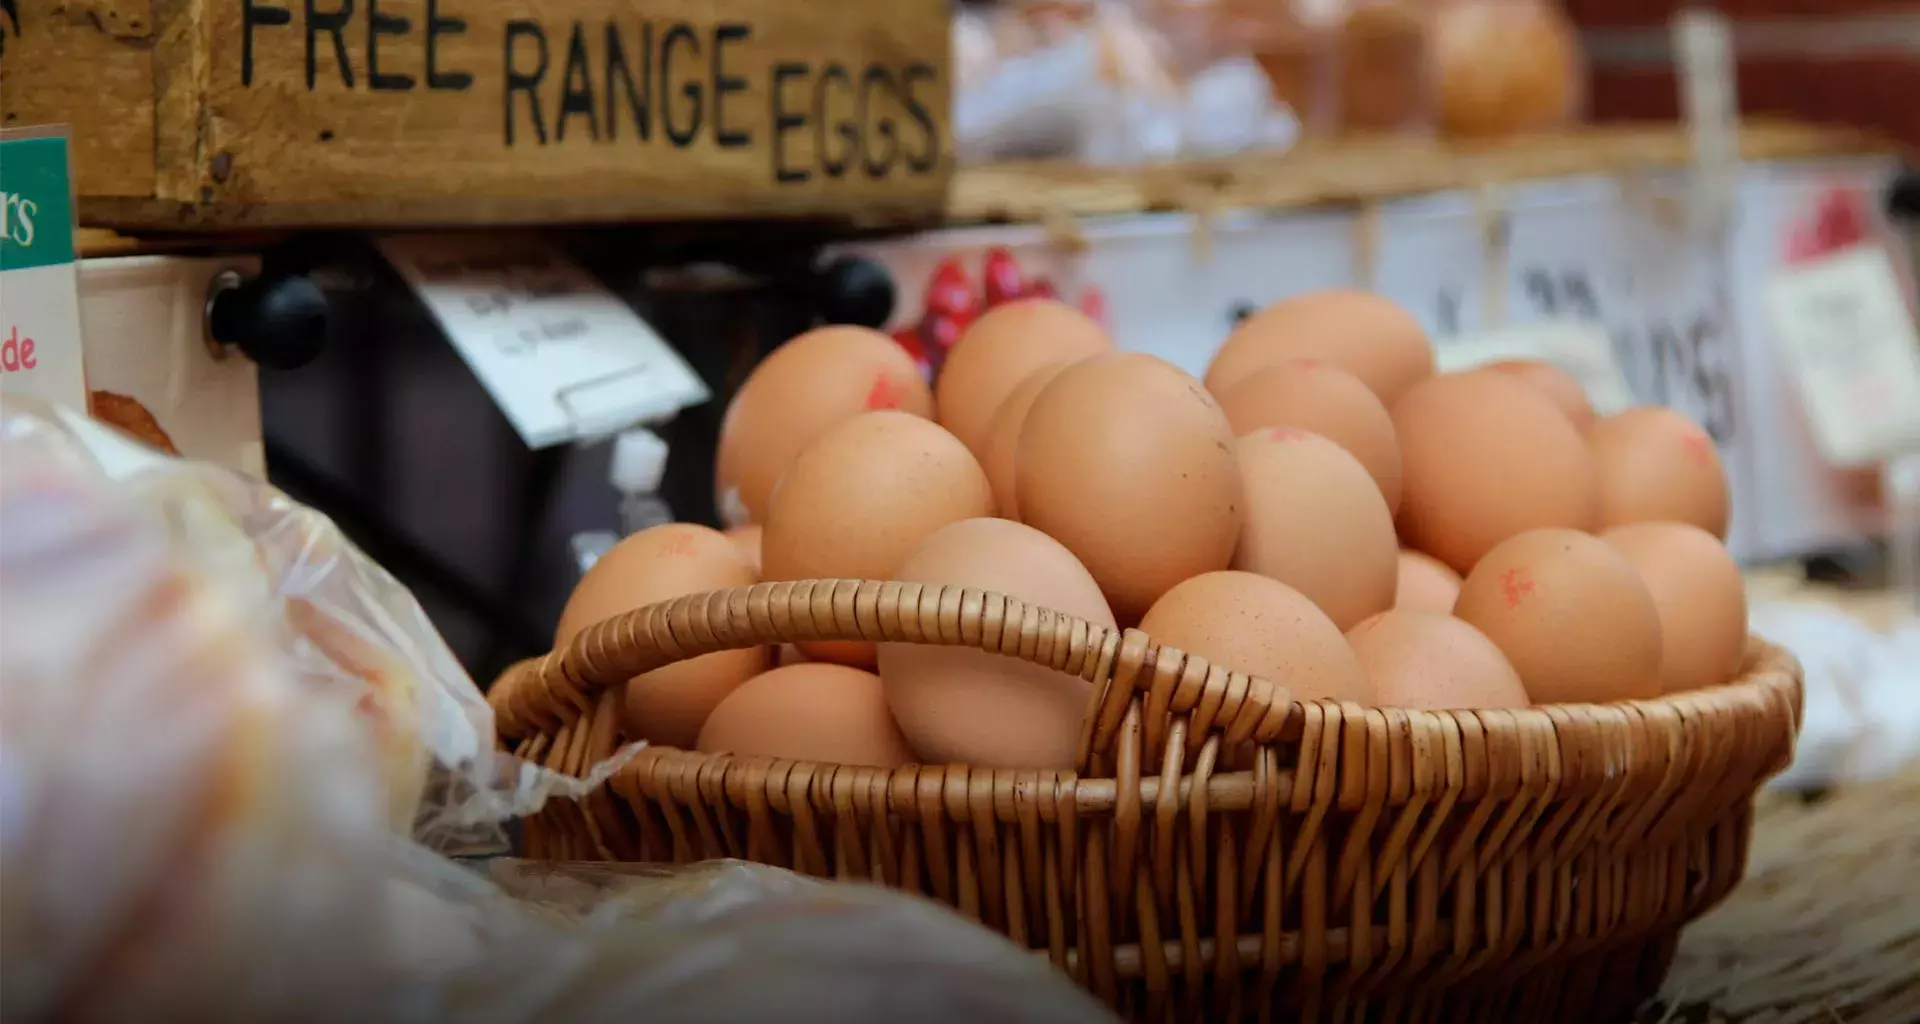 Profesor Tec Querétaro explica el fenómeno de la Gripe Aviar y sus efectos en el precio del huevo